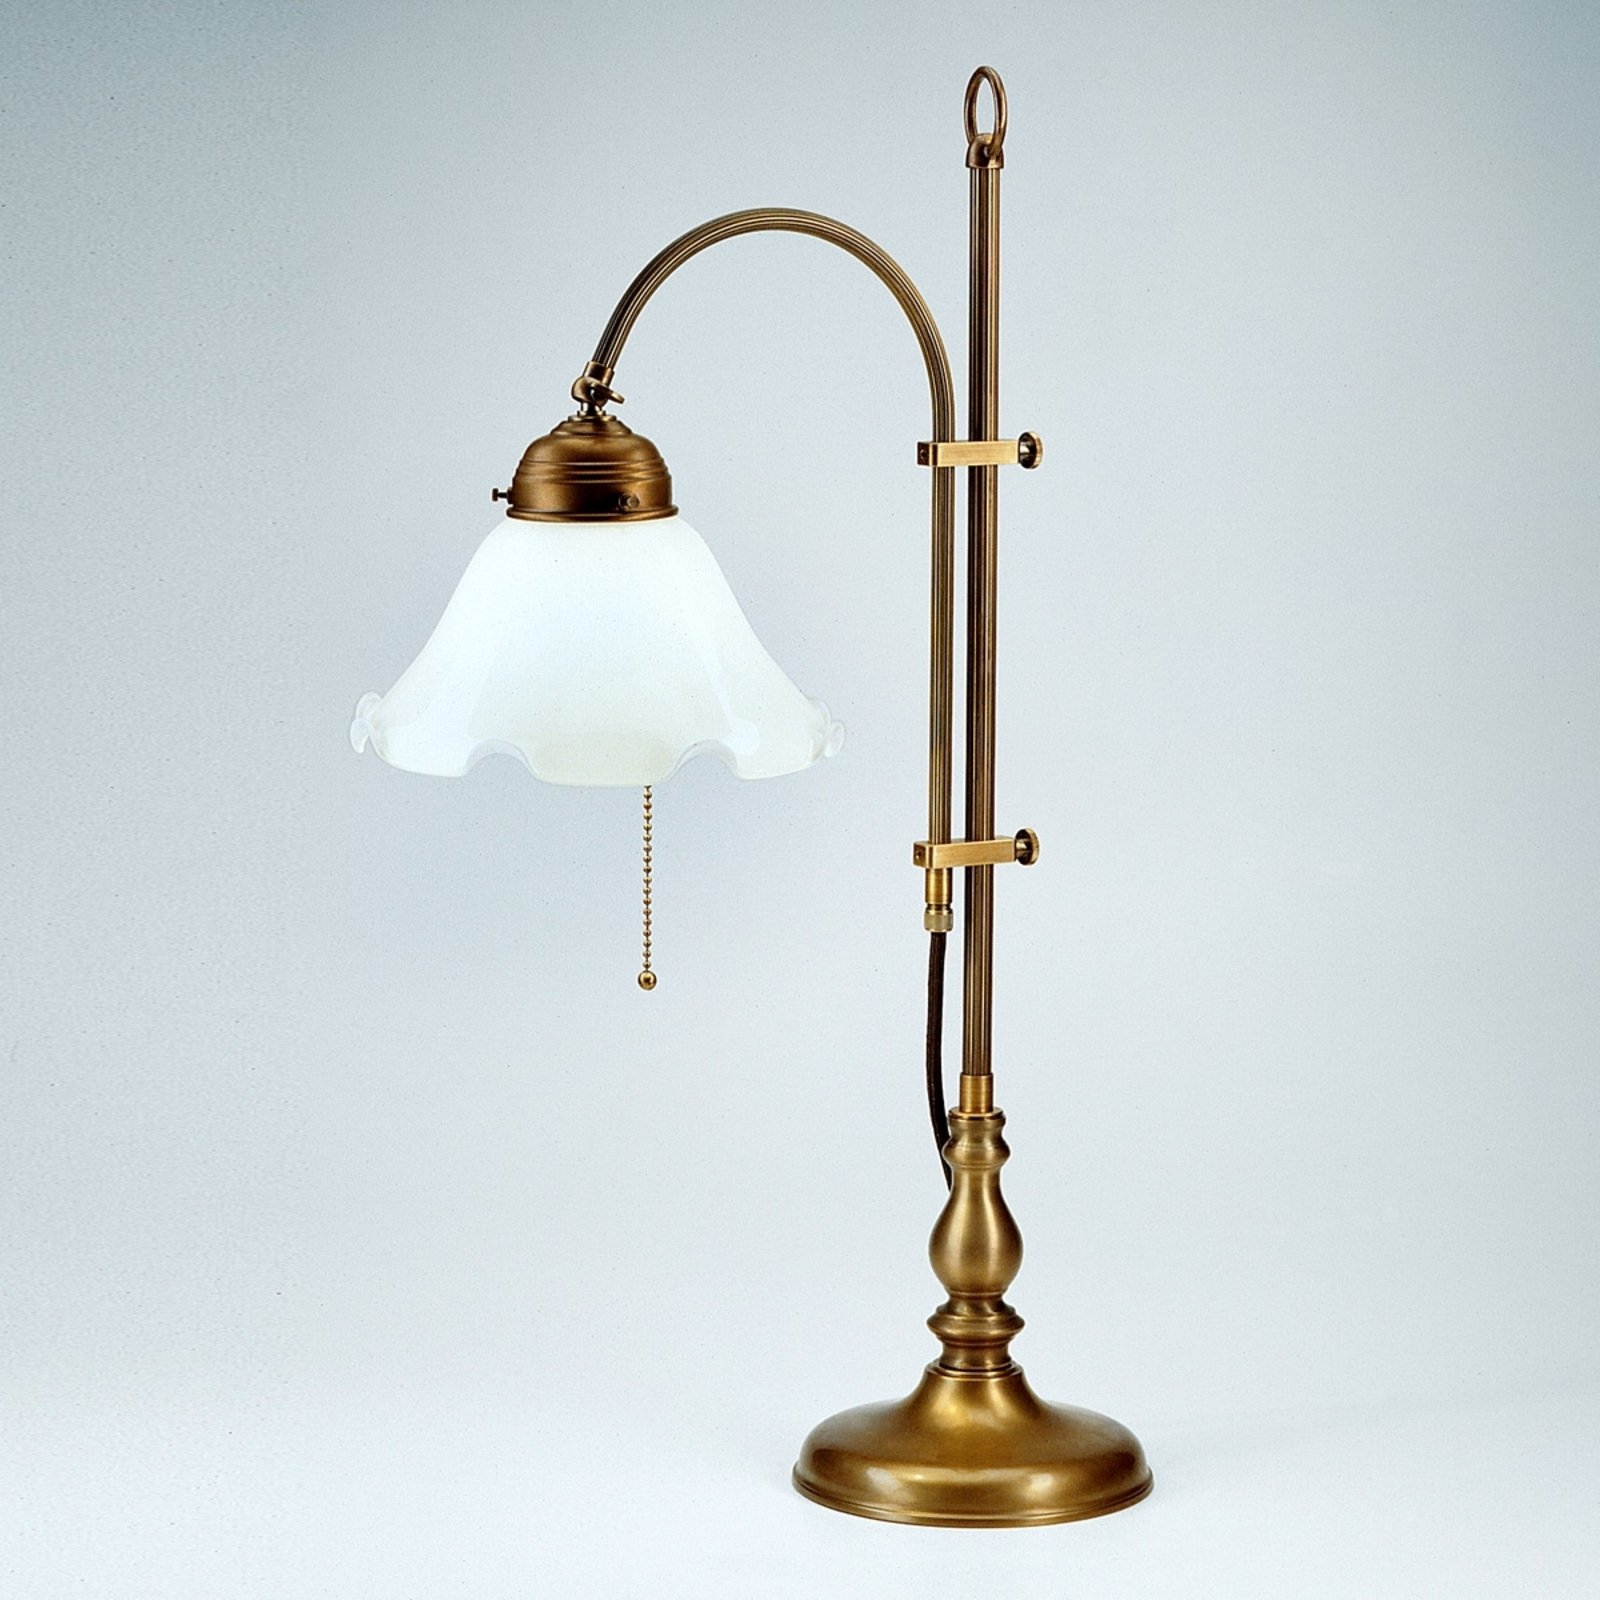 Ernst asztali lámpa - praktikusan állítható